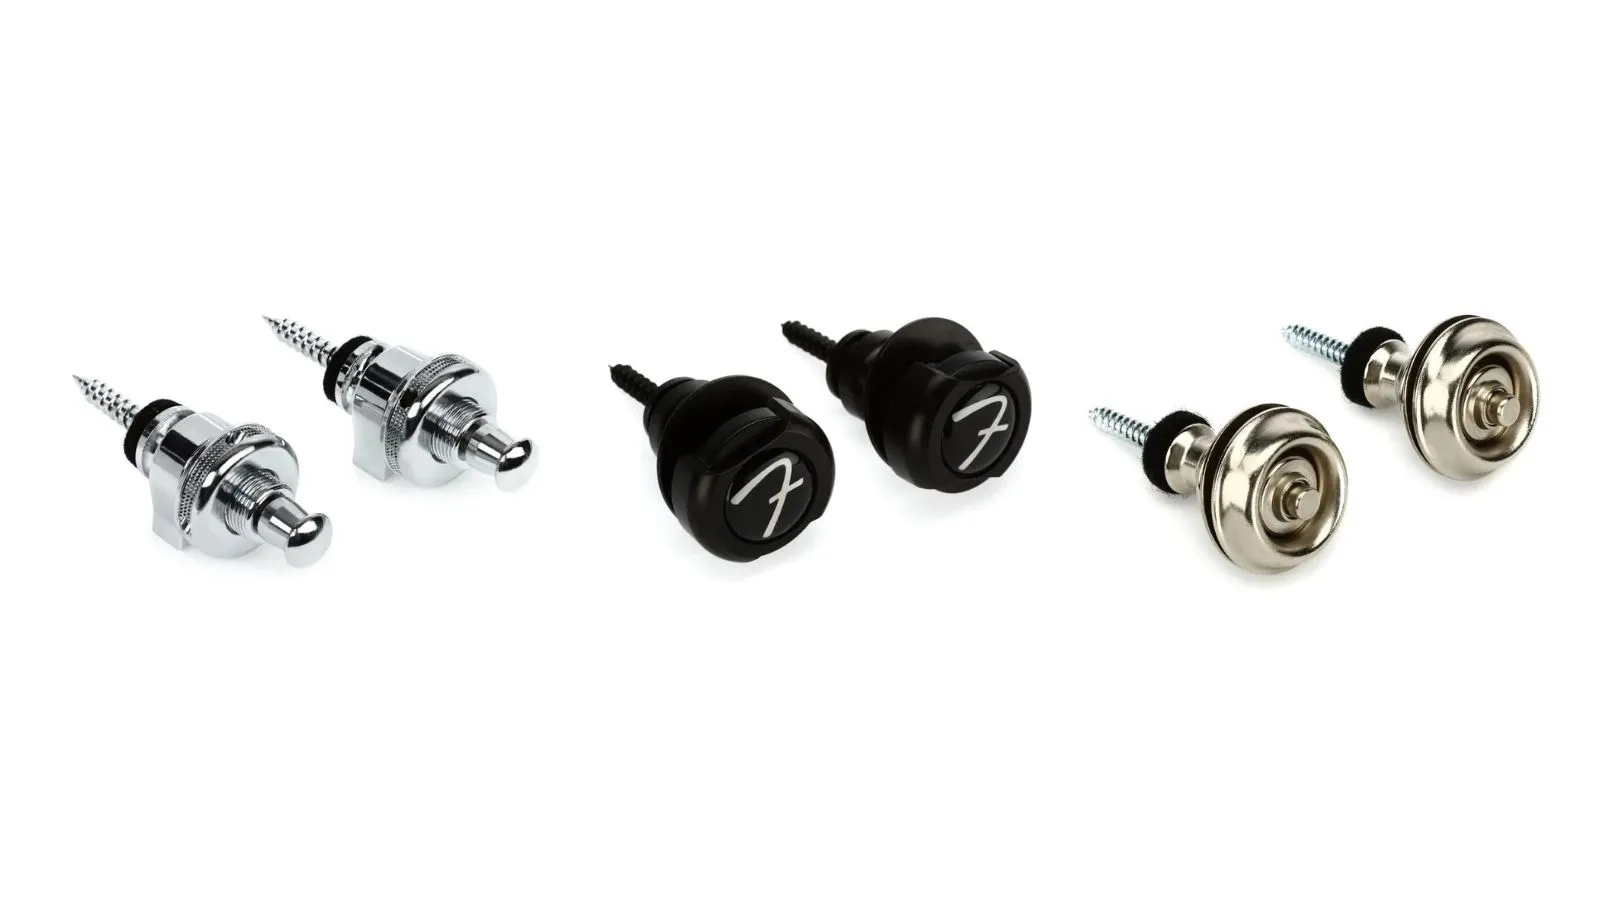 Schaller Strap Lock - Black Strap Locks - Best Bass Gear